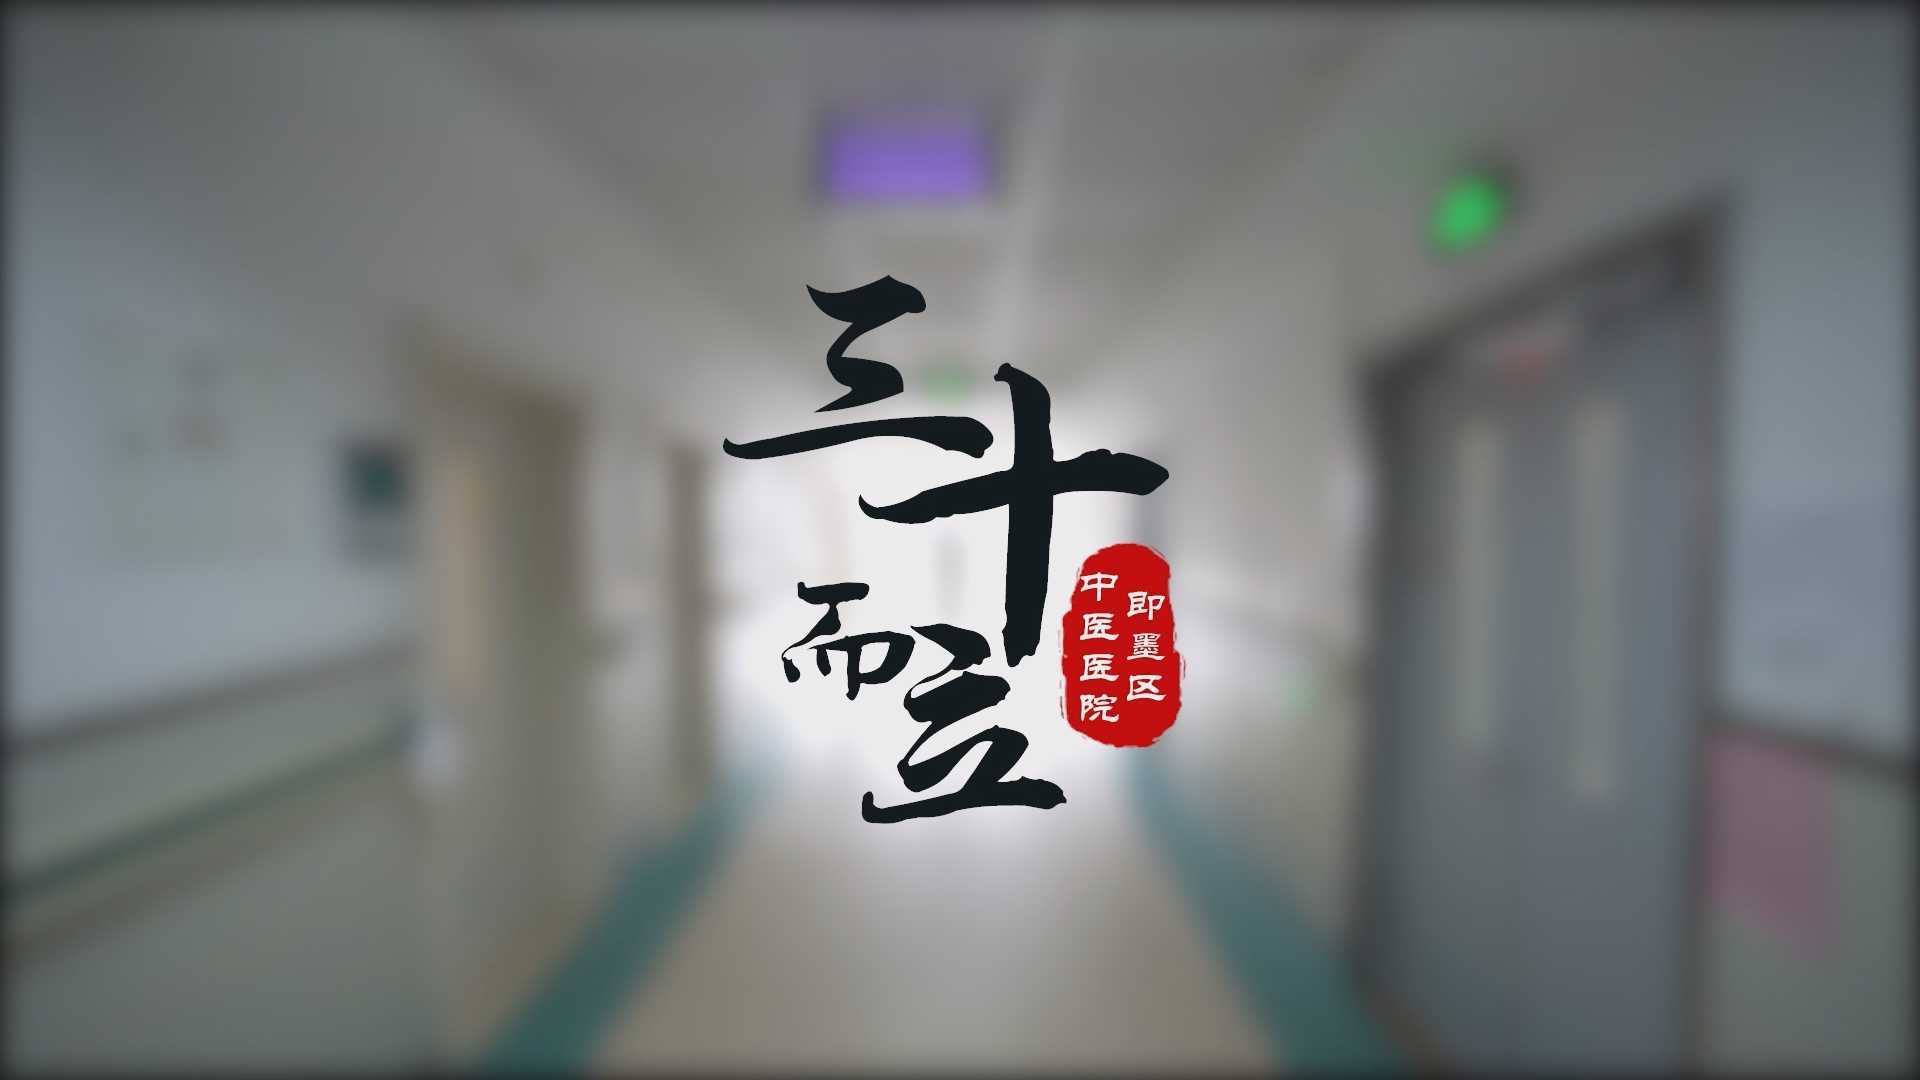 即墨区中医医院建院三十周年宣传片《三十而立》